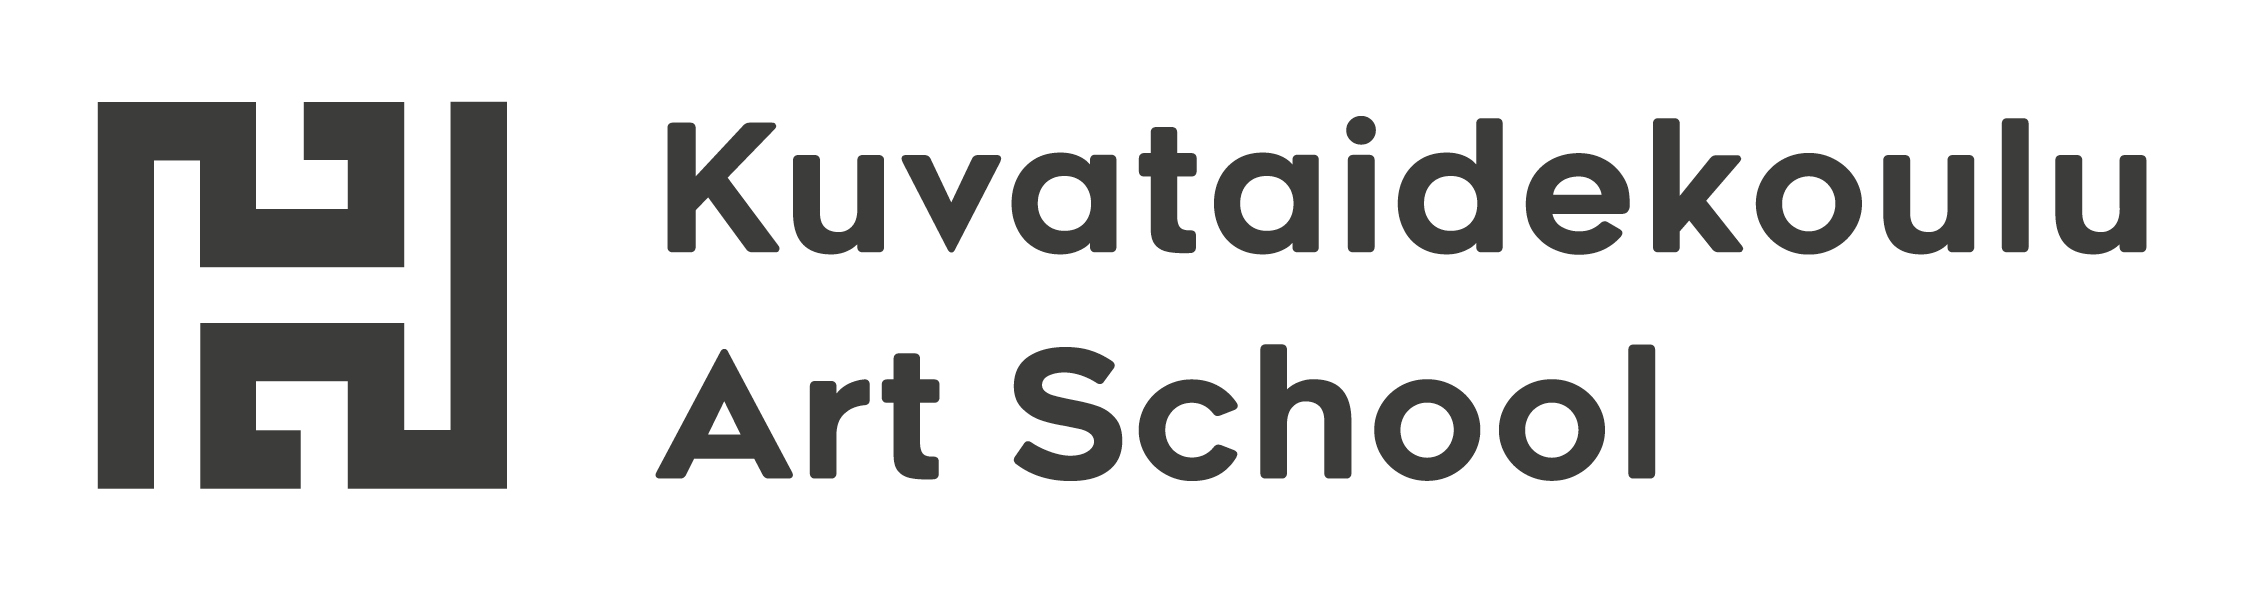 Kuvataidekoulun ja kurssikeskuksen logo